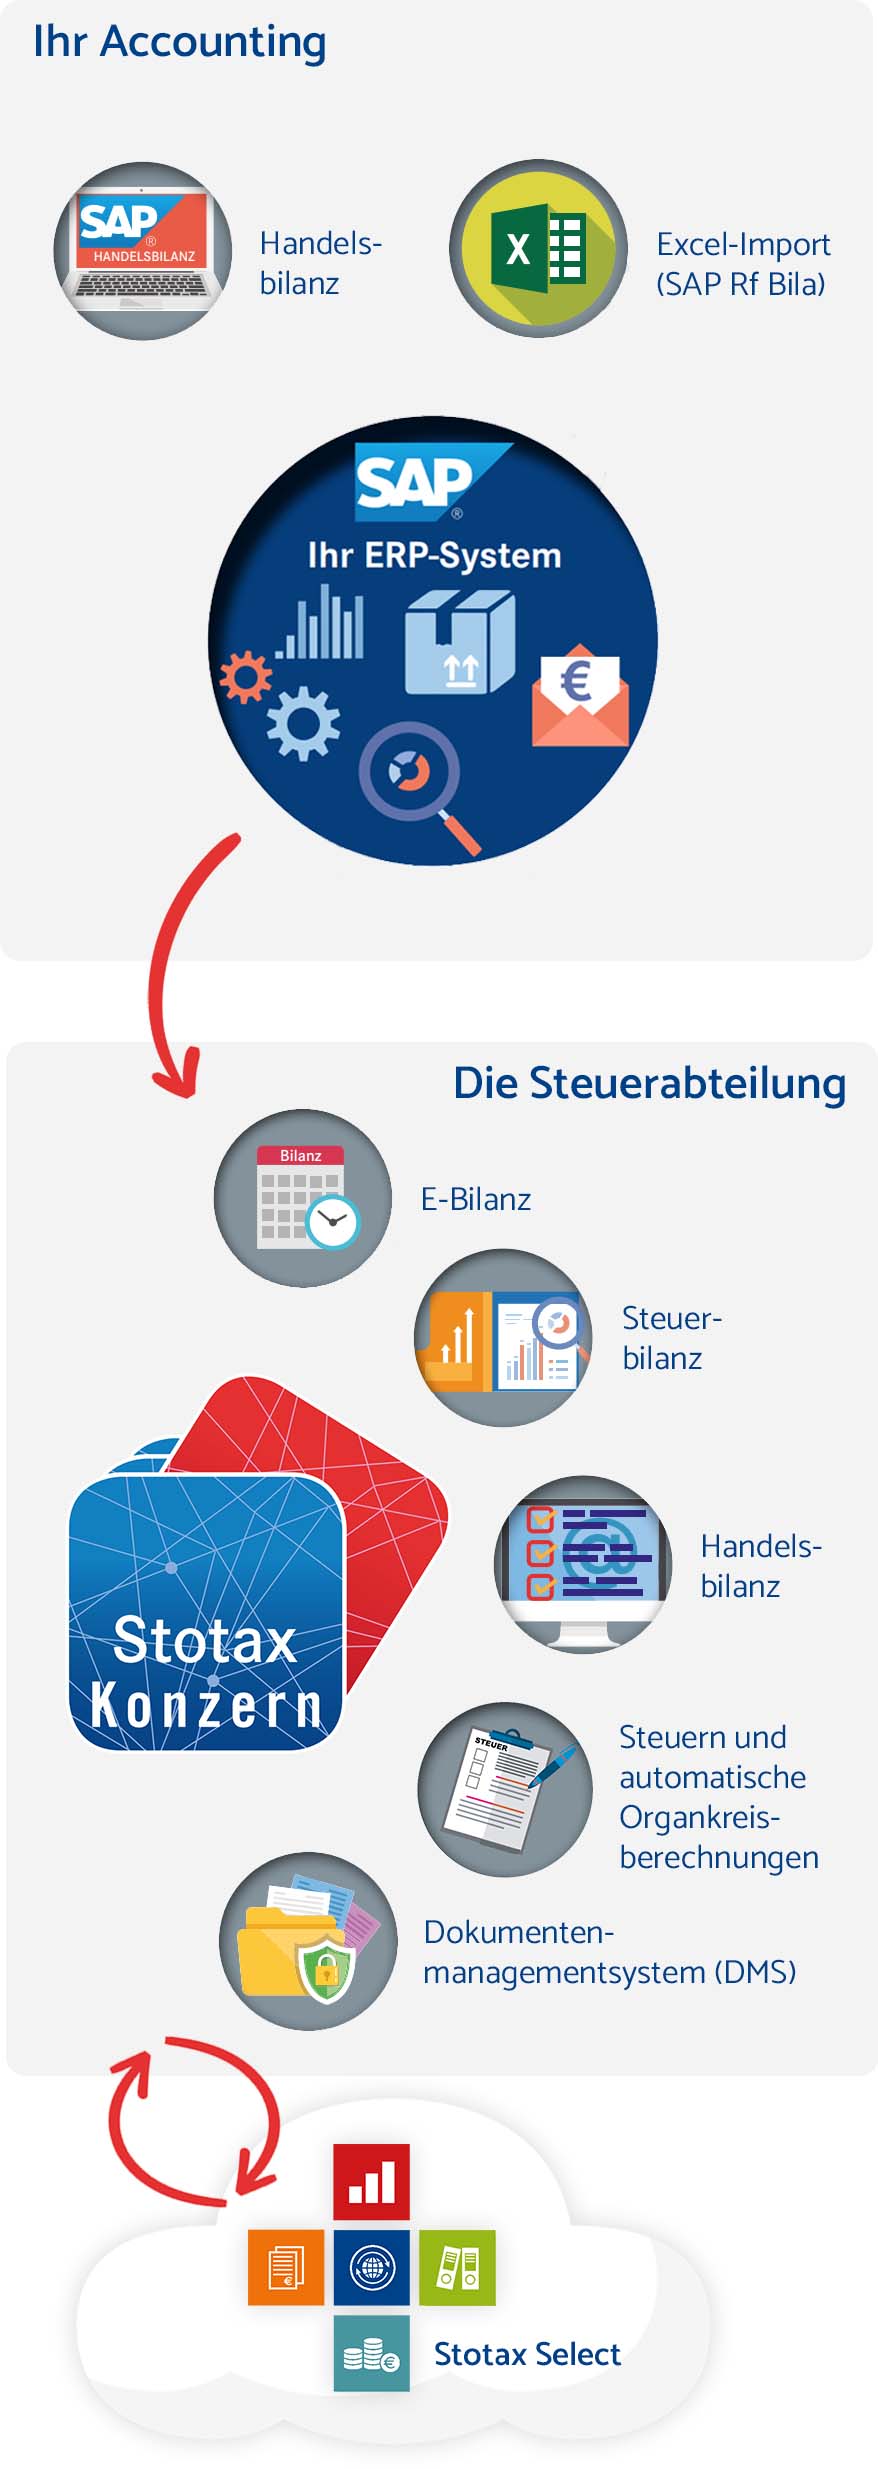 Stotax Konzern im Zusammenspiel mit Stotax Select Mobil